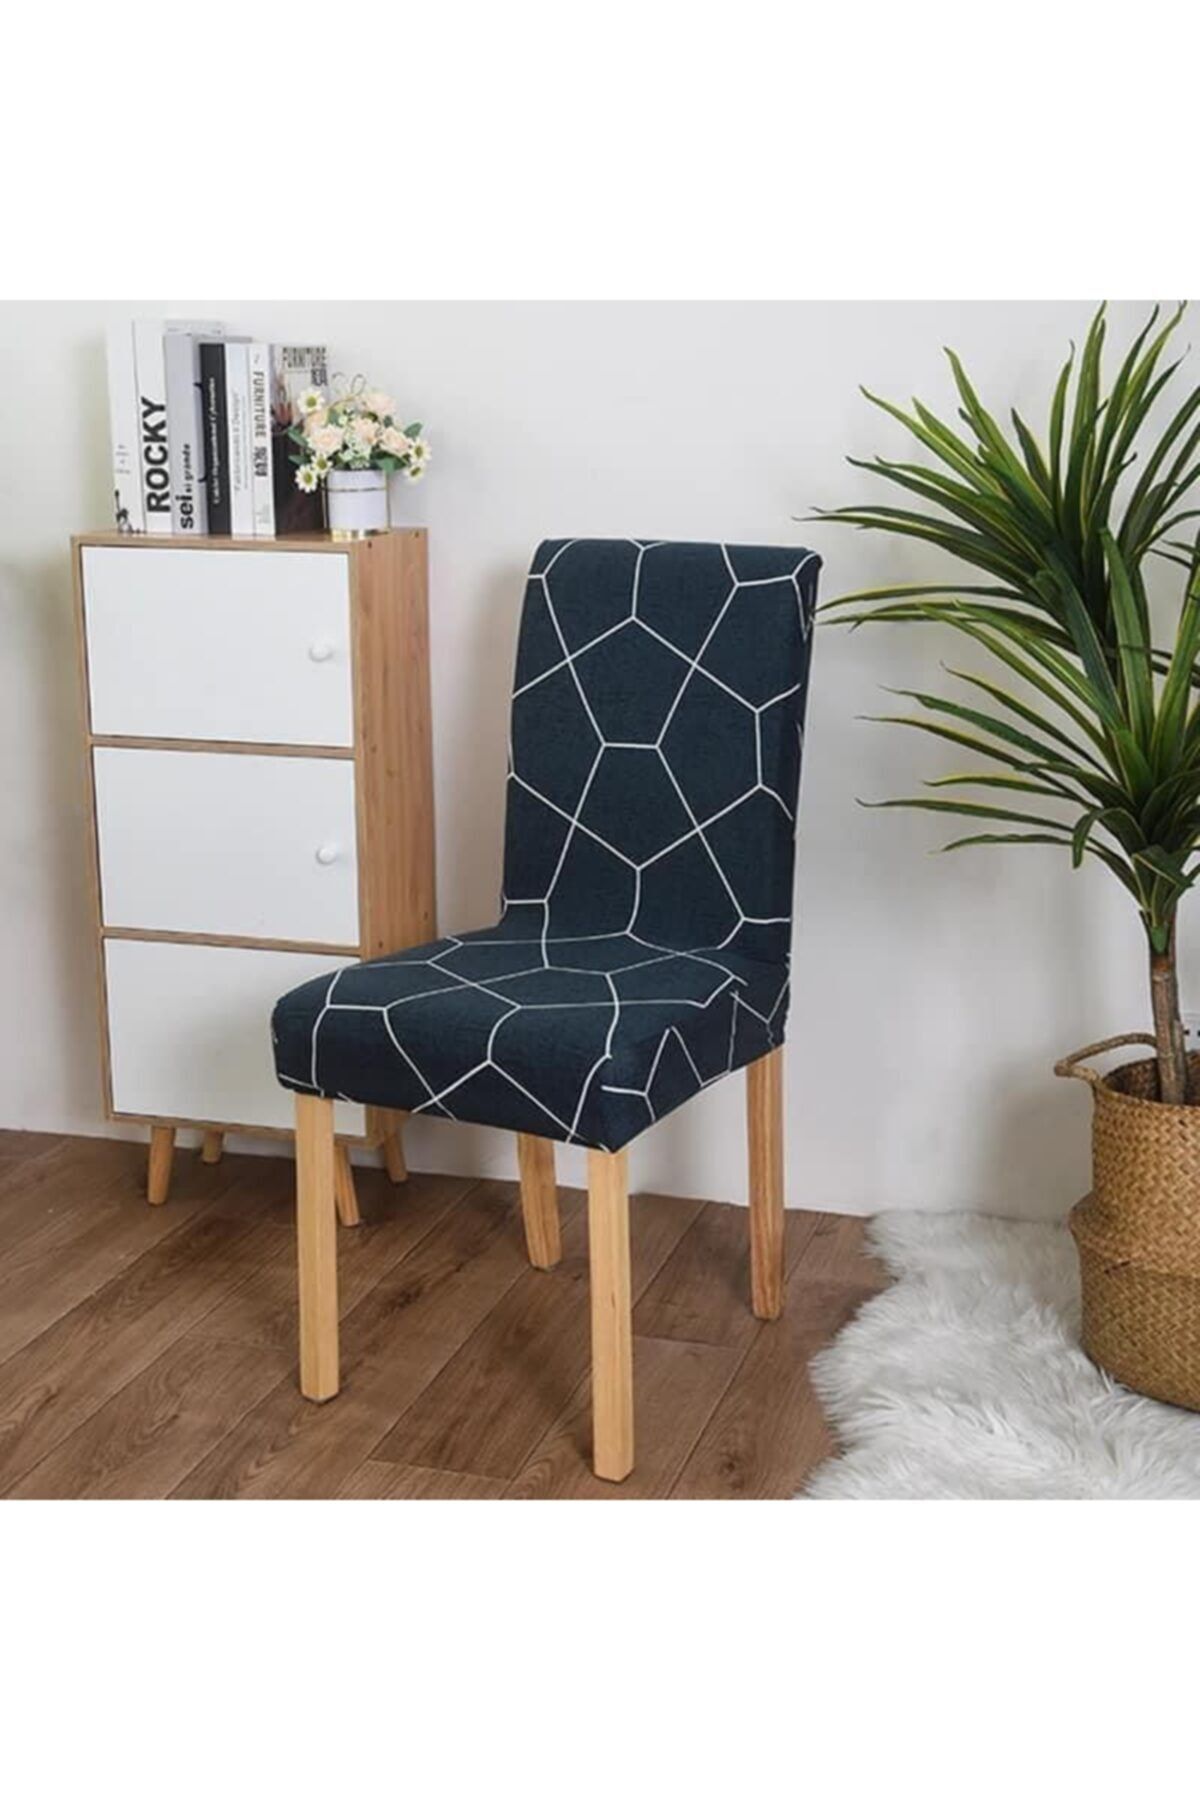 elgeyar Desenli Kadife Sandalye Kılıfı Likrali Lastikli Standart Gri Geometrik Desen 1 Adet Mavi